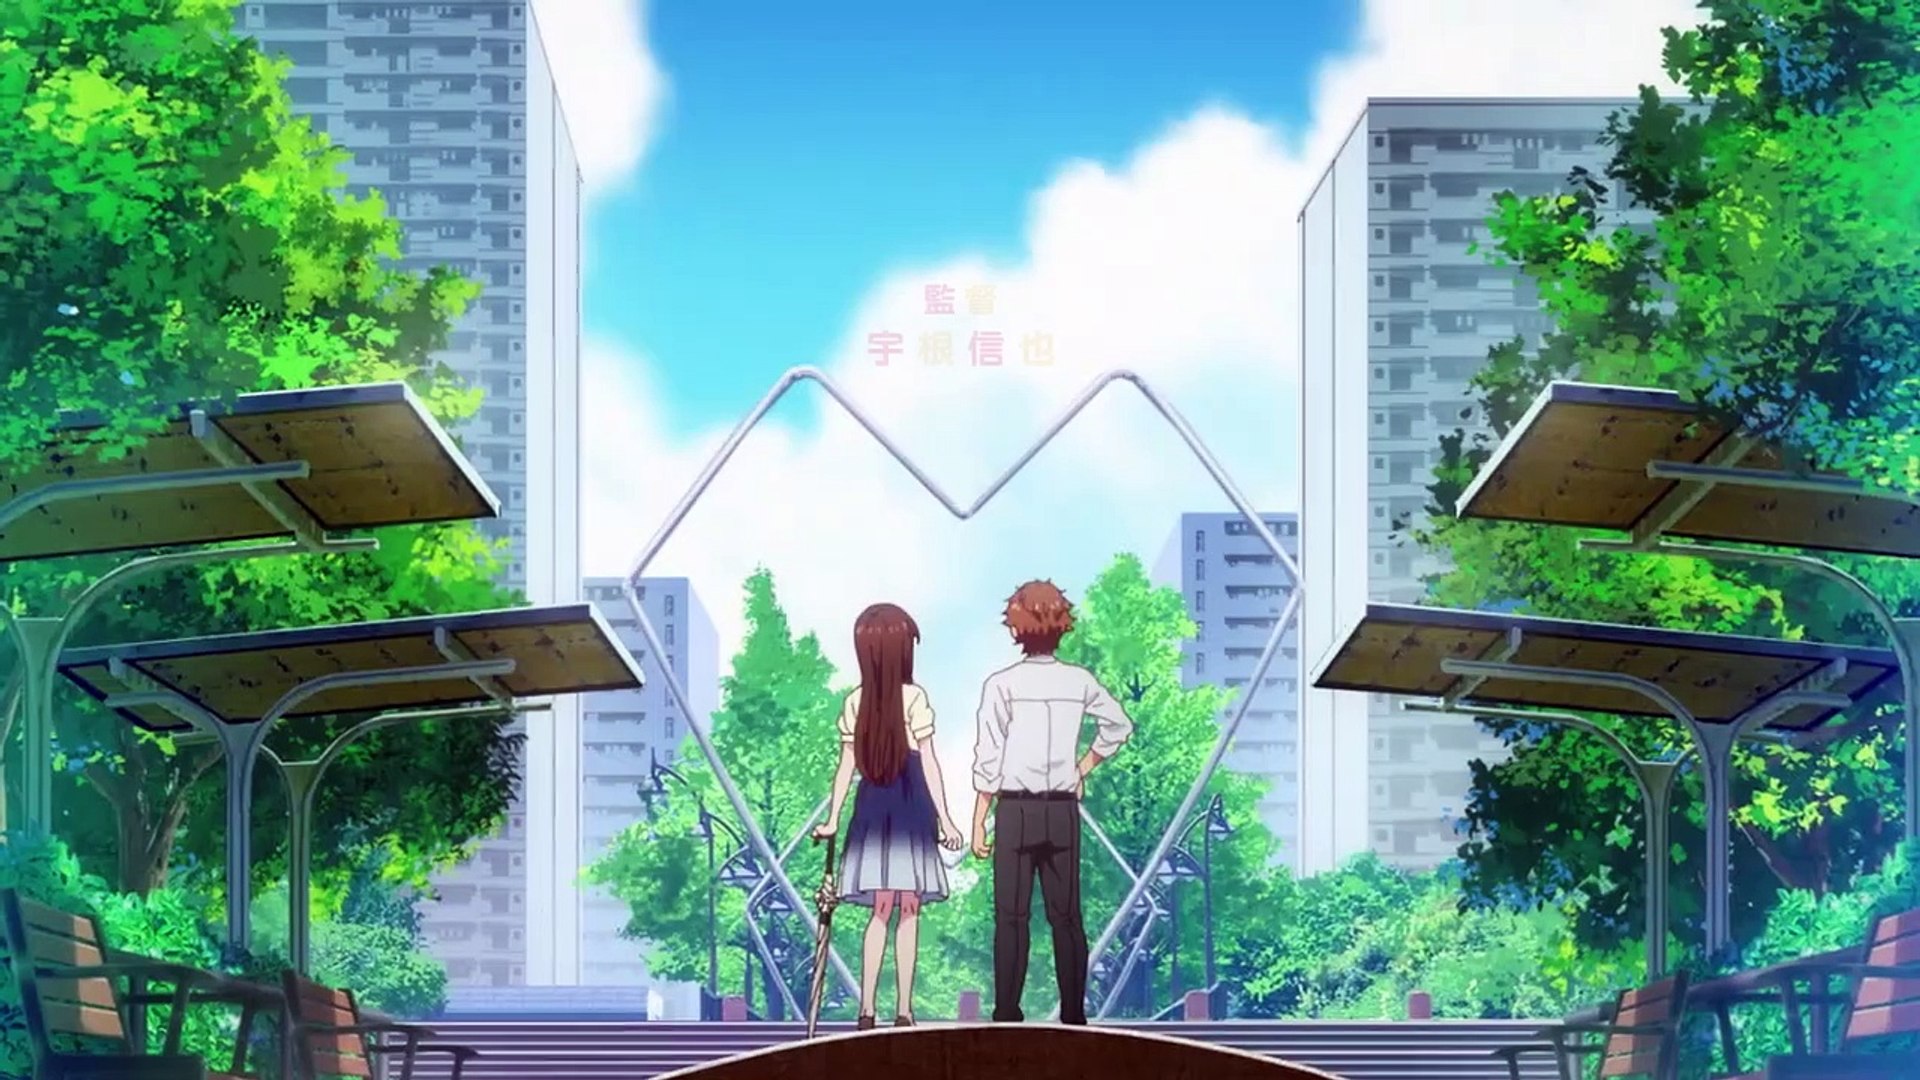 Rent A Girlfriend Season 3 Preview - Manga - video Dailymotion